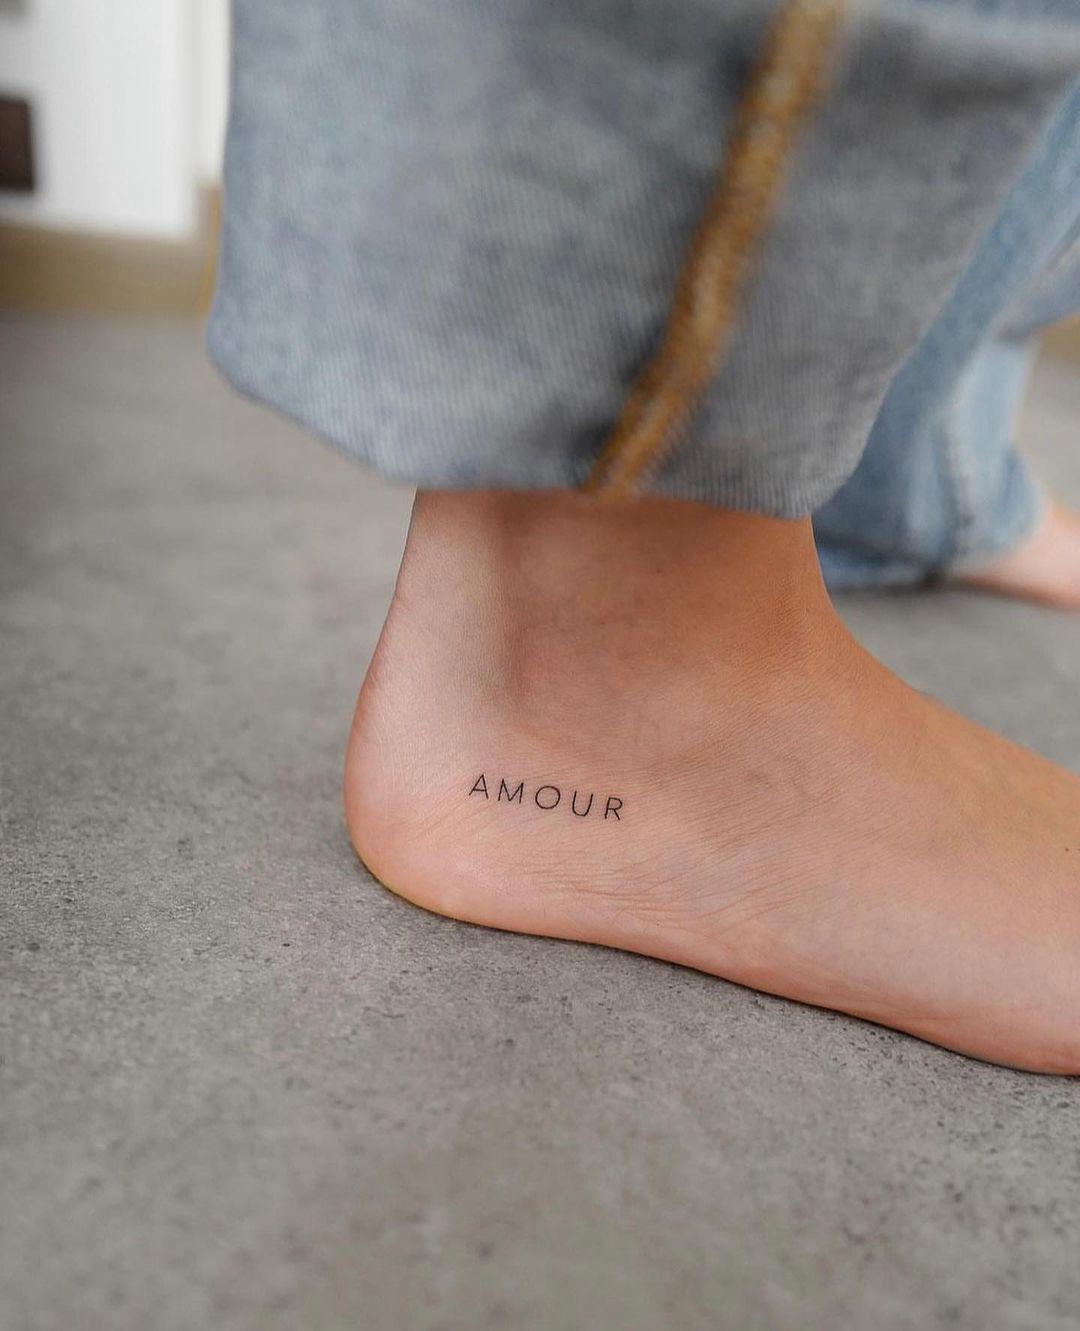 'Amour' tatuado en el pie con letra sans serif